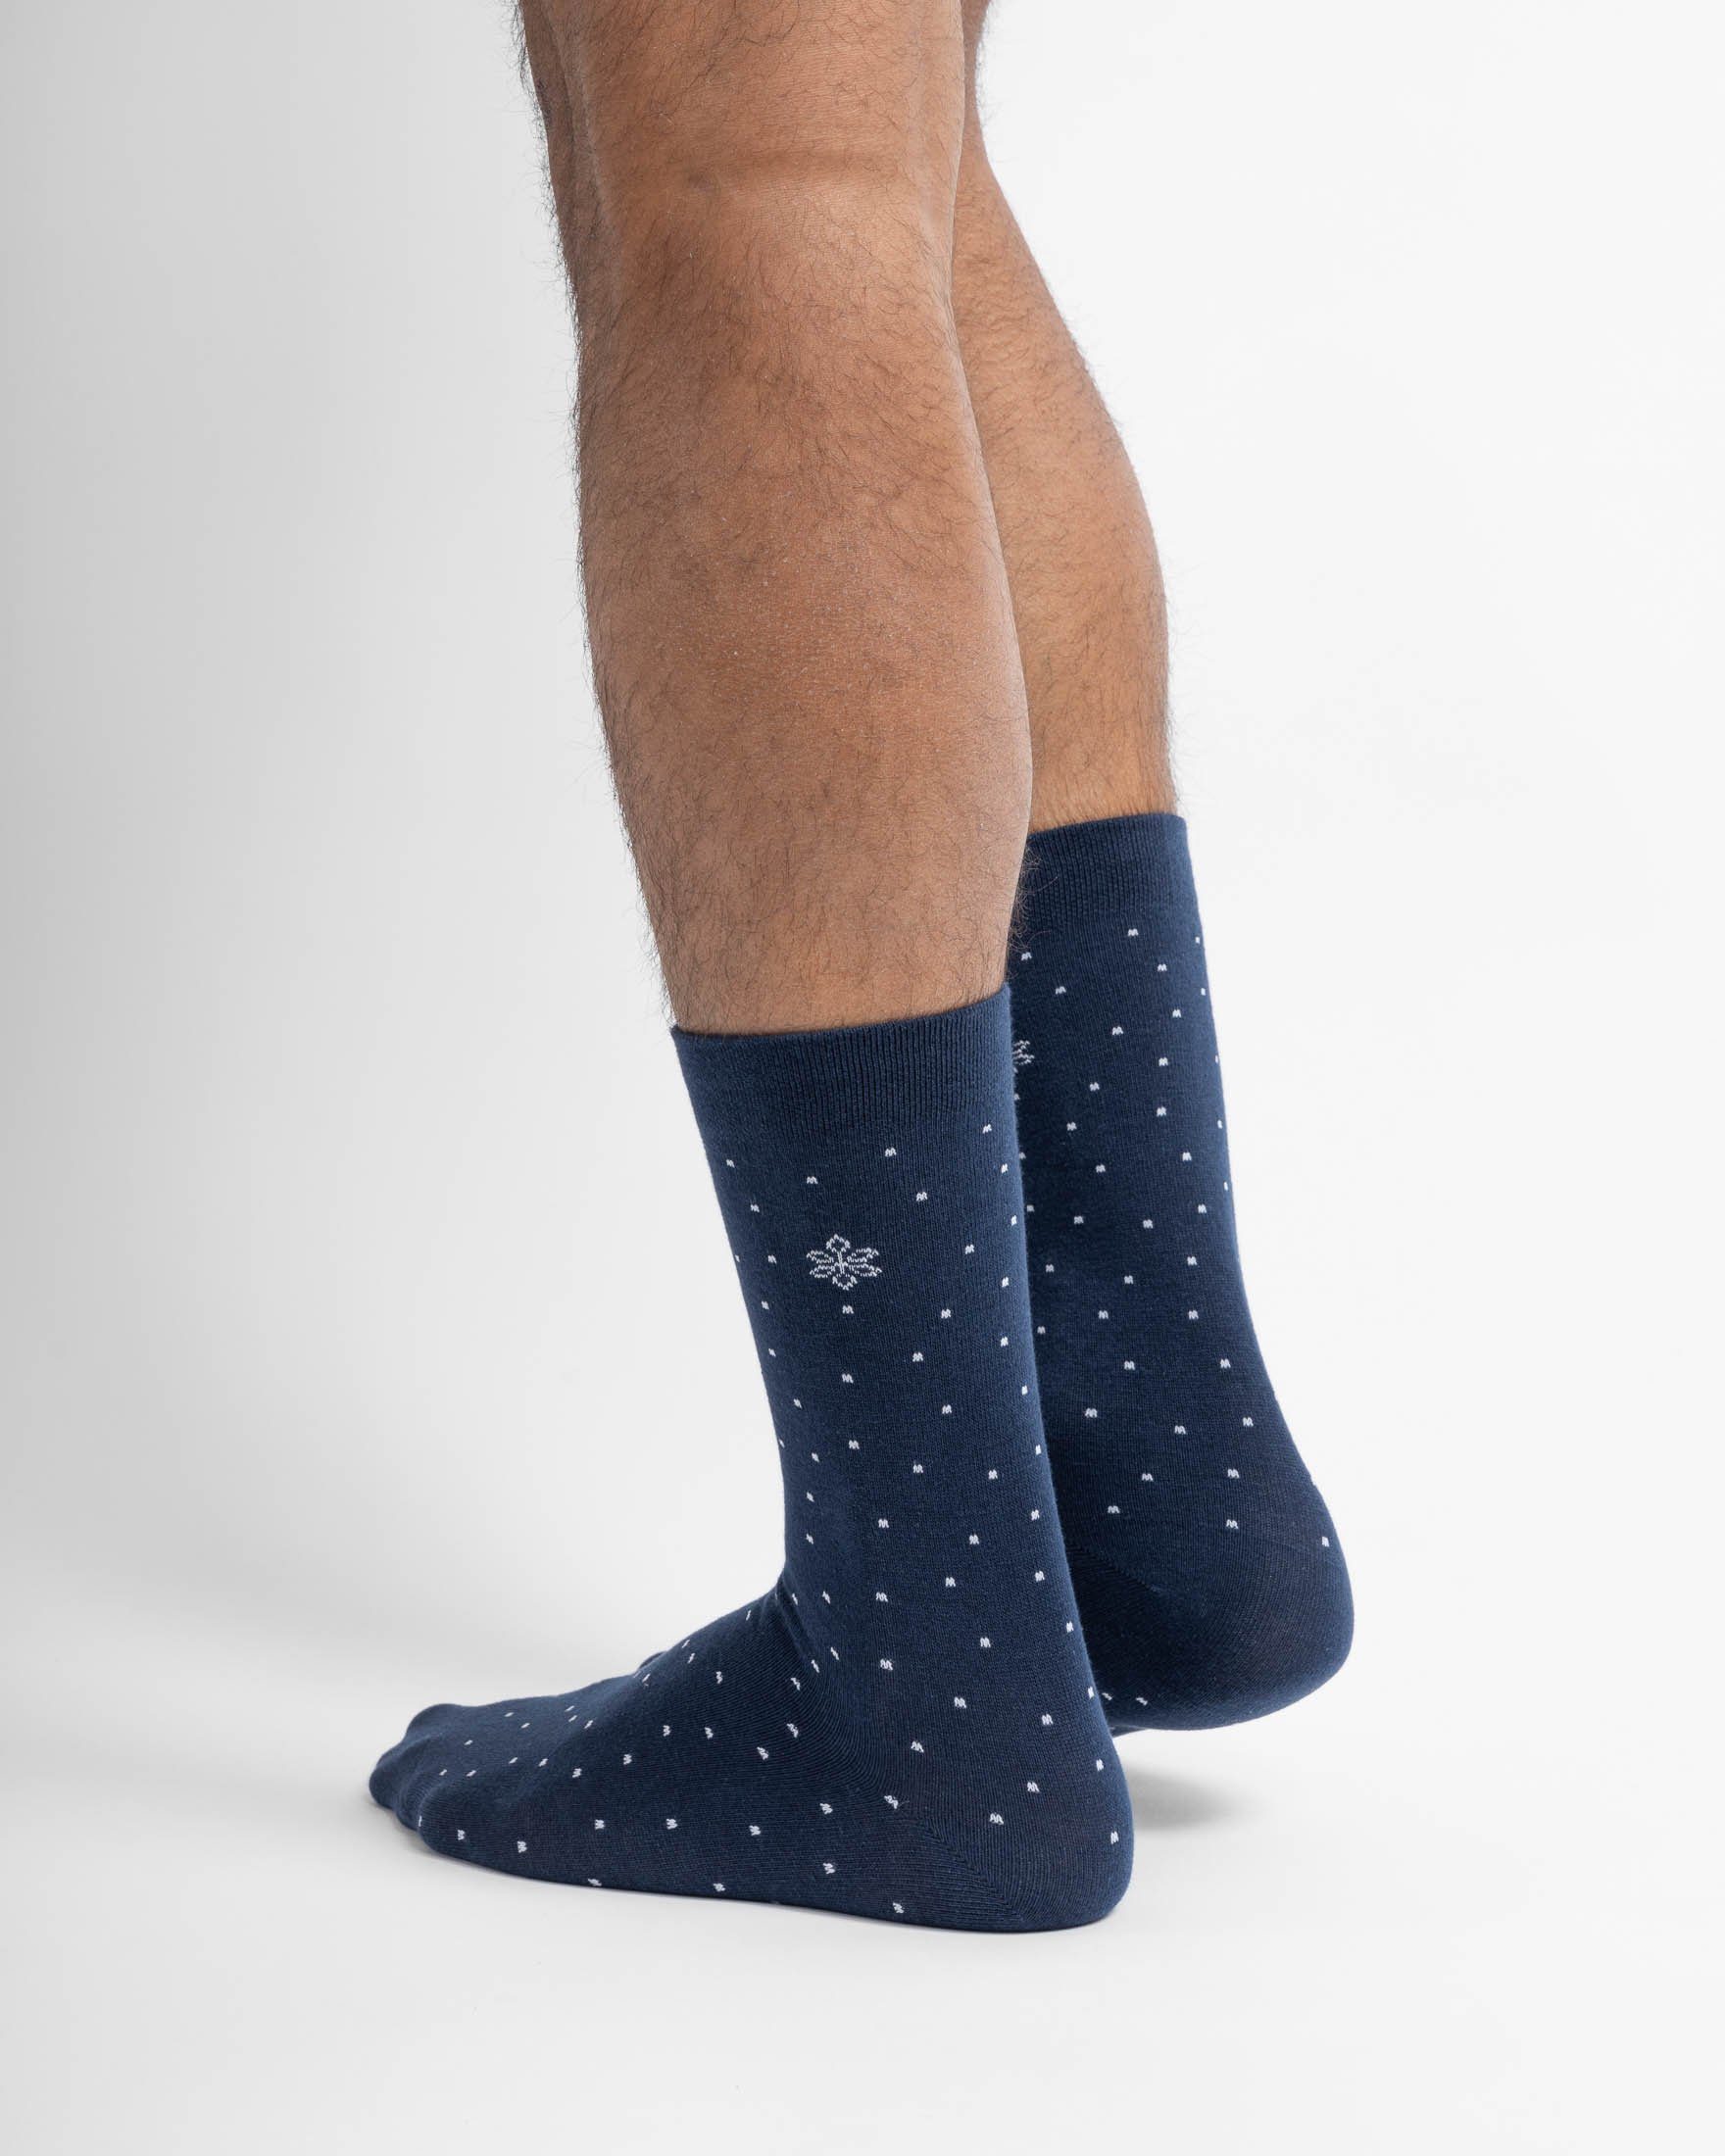 Wäsche/Bademode Strümpfe SNOCKS Businesssocken Weihnachten Geschenk Business Socken (4-Paar) aus Bio-Baumwolle, ohne störende Na